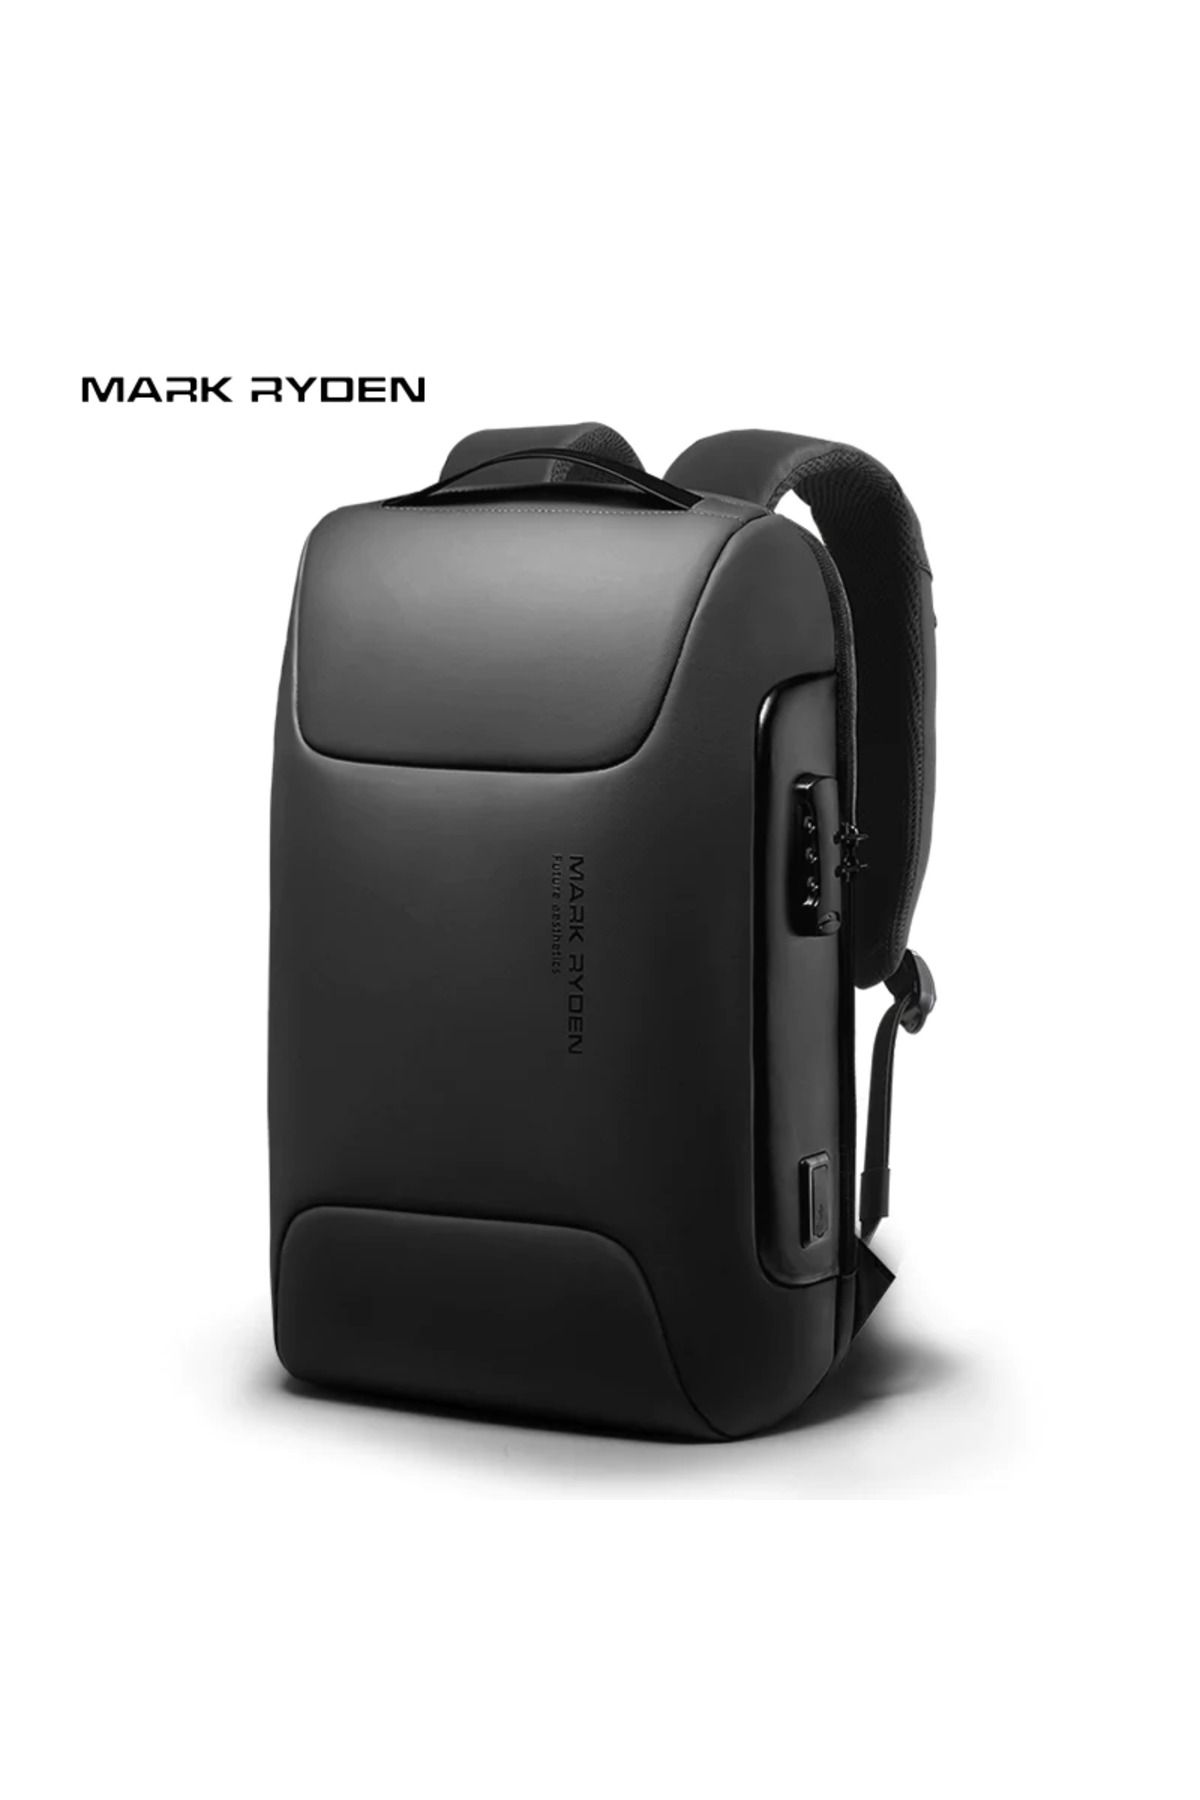 Mark Ryden Laptop Siyah Renk Sırt Çantası Kilitli Usb Şarj Kitli Çanta Odyssey - Mr9116_00